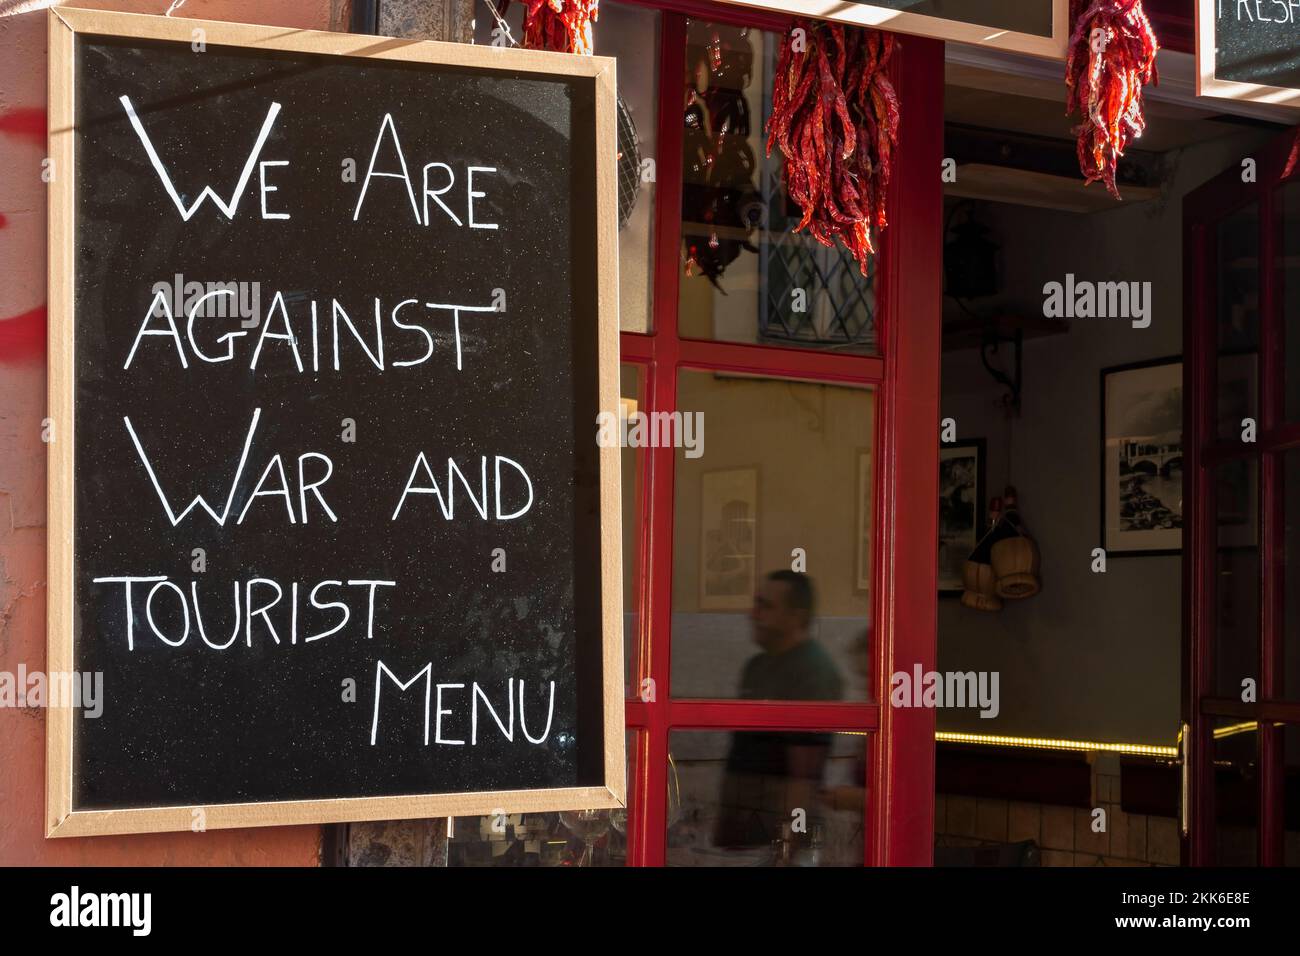 Nous sommes contre la guerre et le menu touristique. Concept message de paix ironique contre la guerre, sur un tableau noir, signe devant un restaurant à Rome, Italie, Europe, UE. Banque D'Images